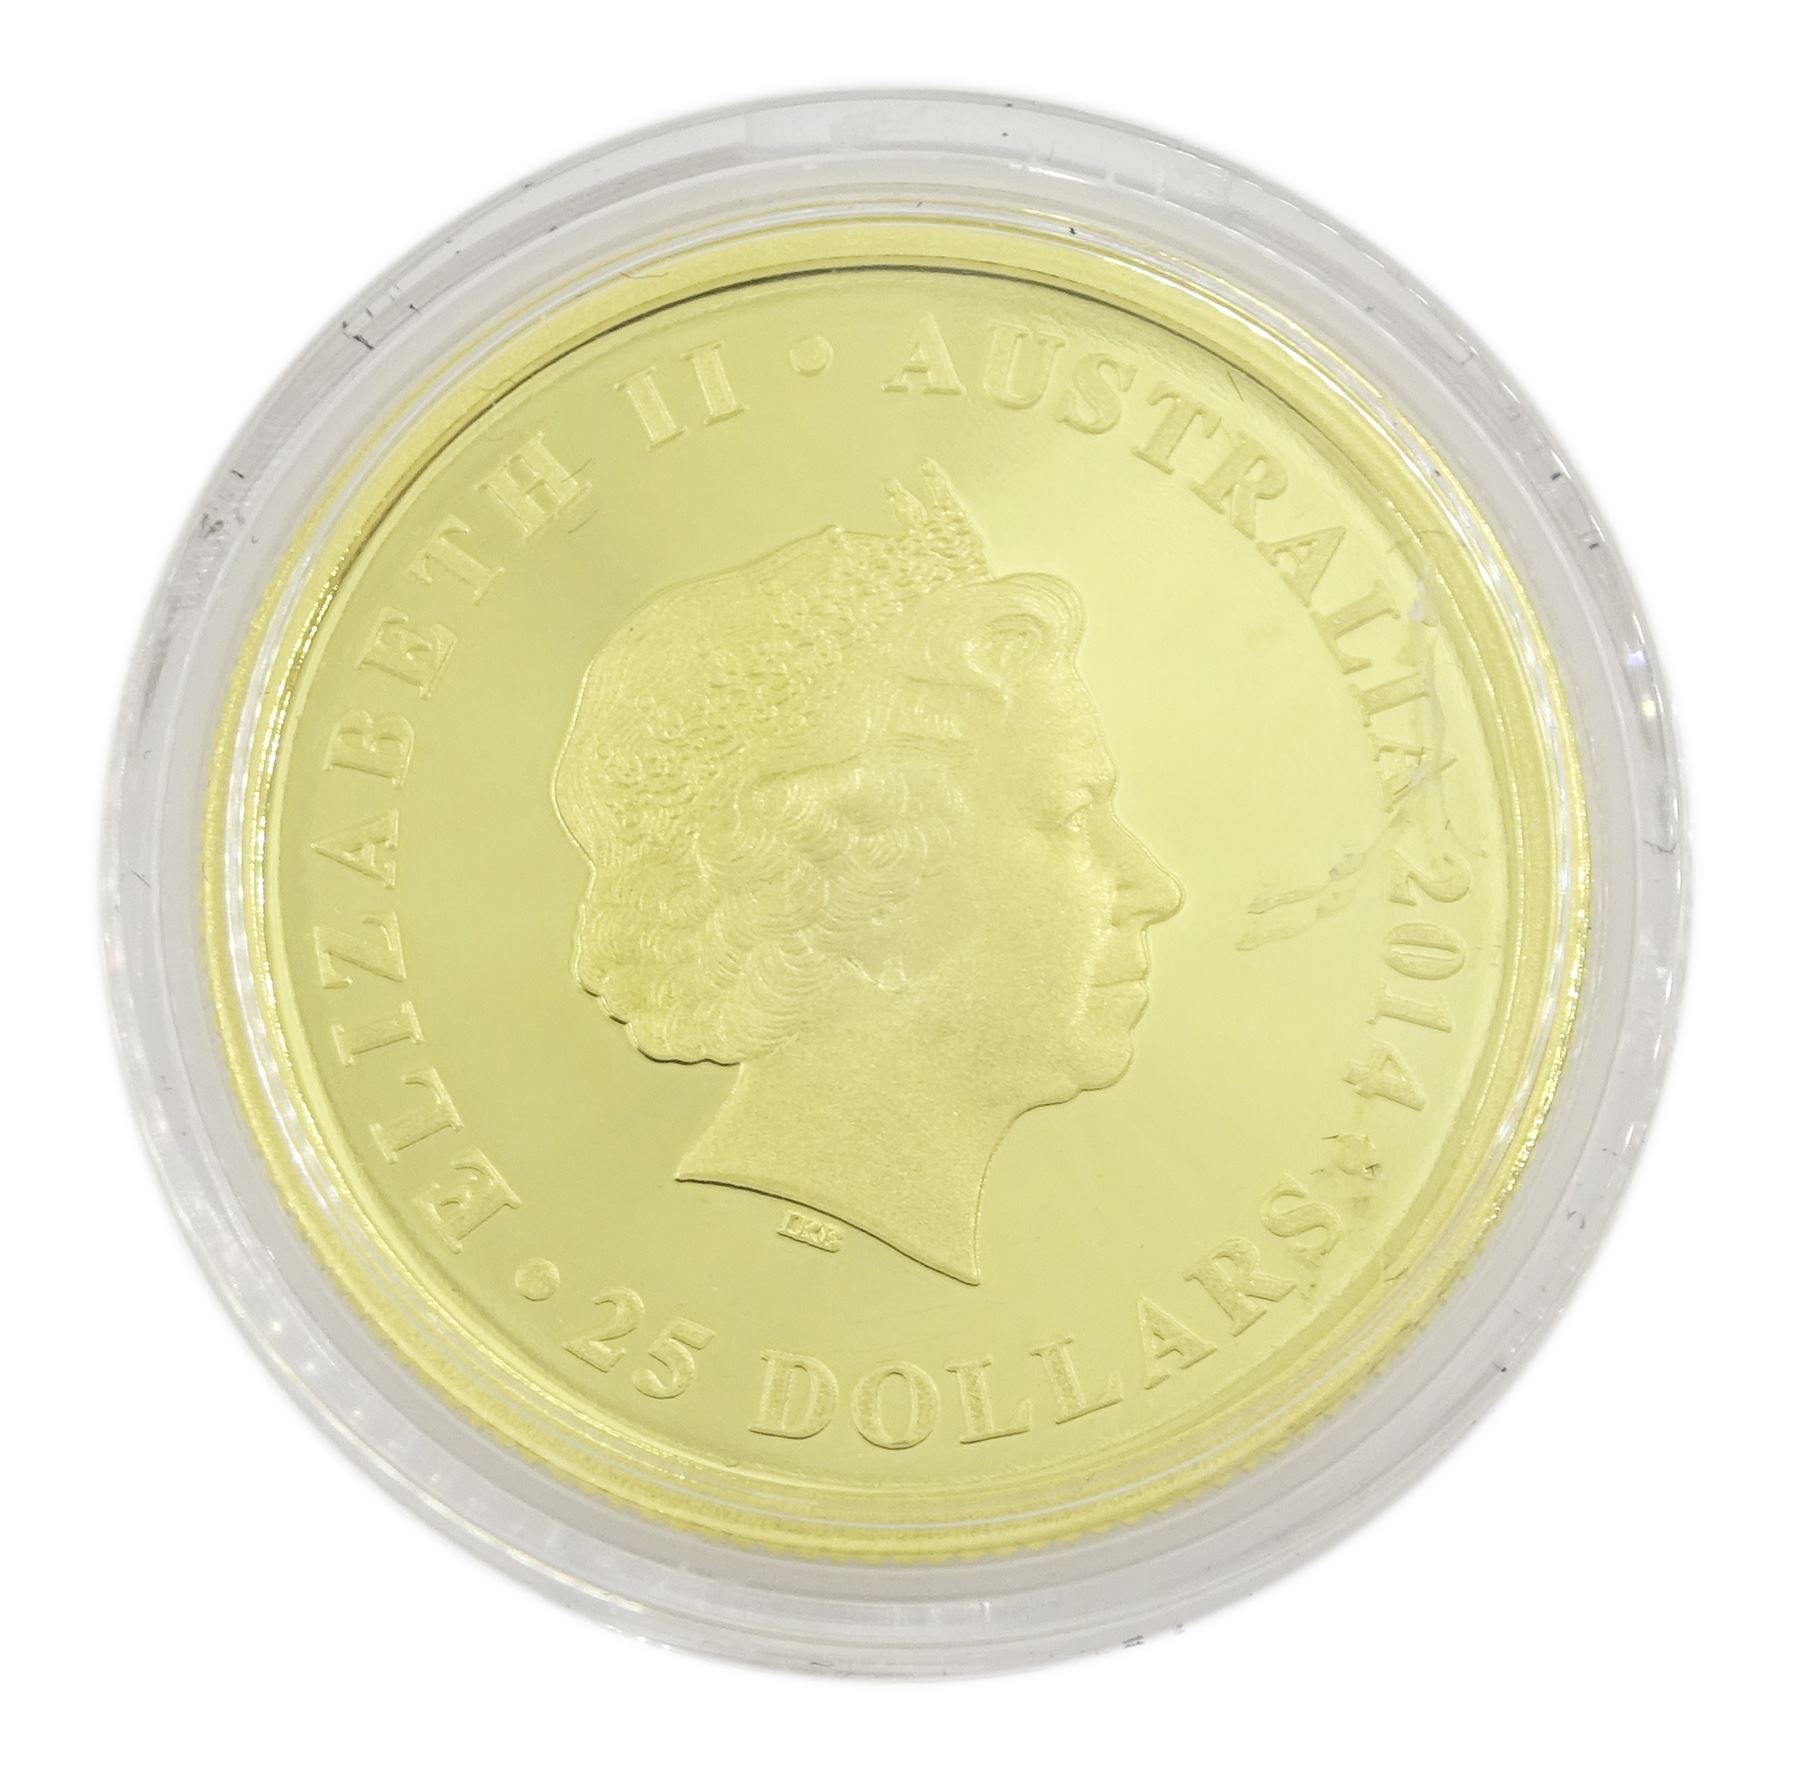 Queen Elizabeth II 2014 Australian gold proof full sovereign coin